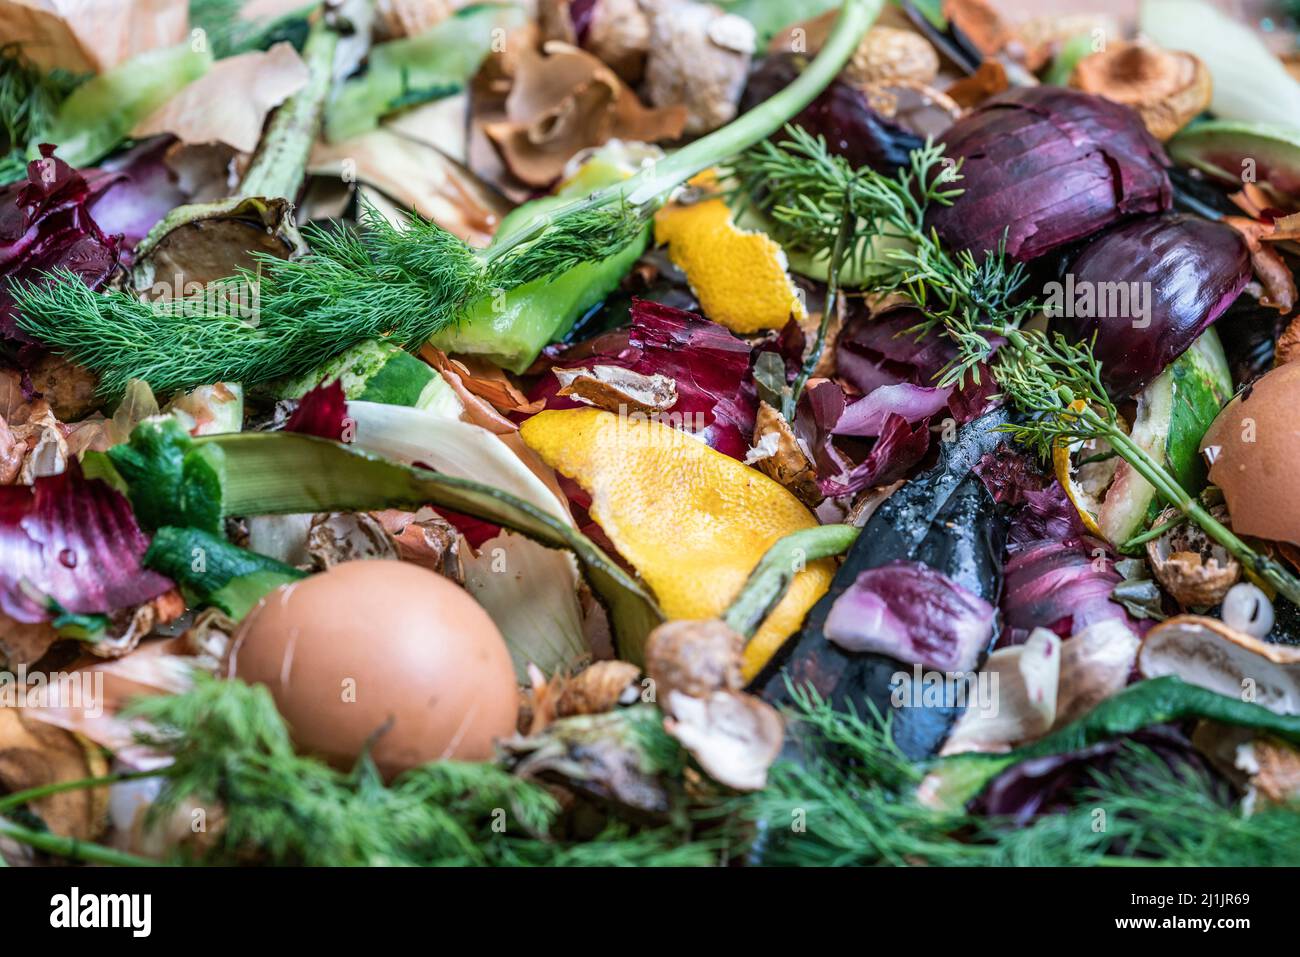 spazzatura decomposta, cumulo di compostaggio di rottami di cucina decomporsi, palo di vista superiore di verdure, frutta, spreco organico come sfondo con focu selettivo Foto Stock